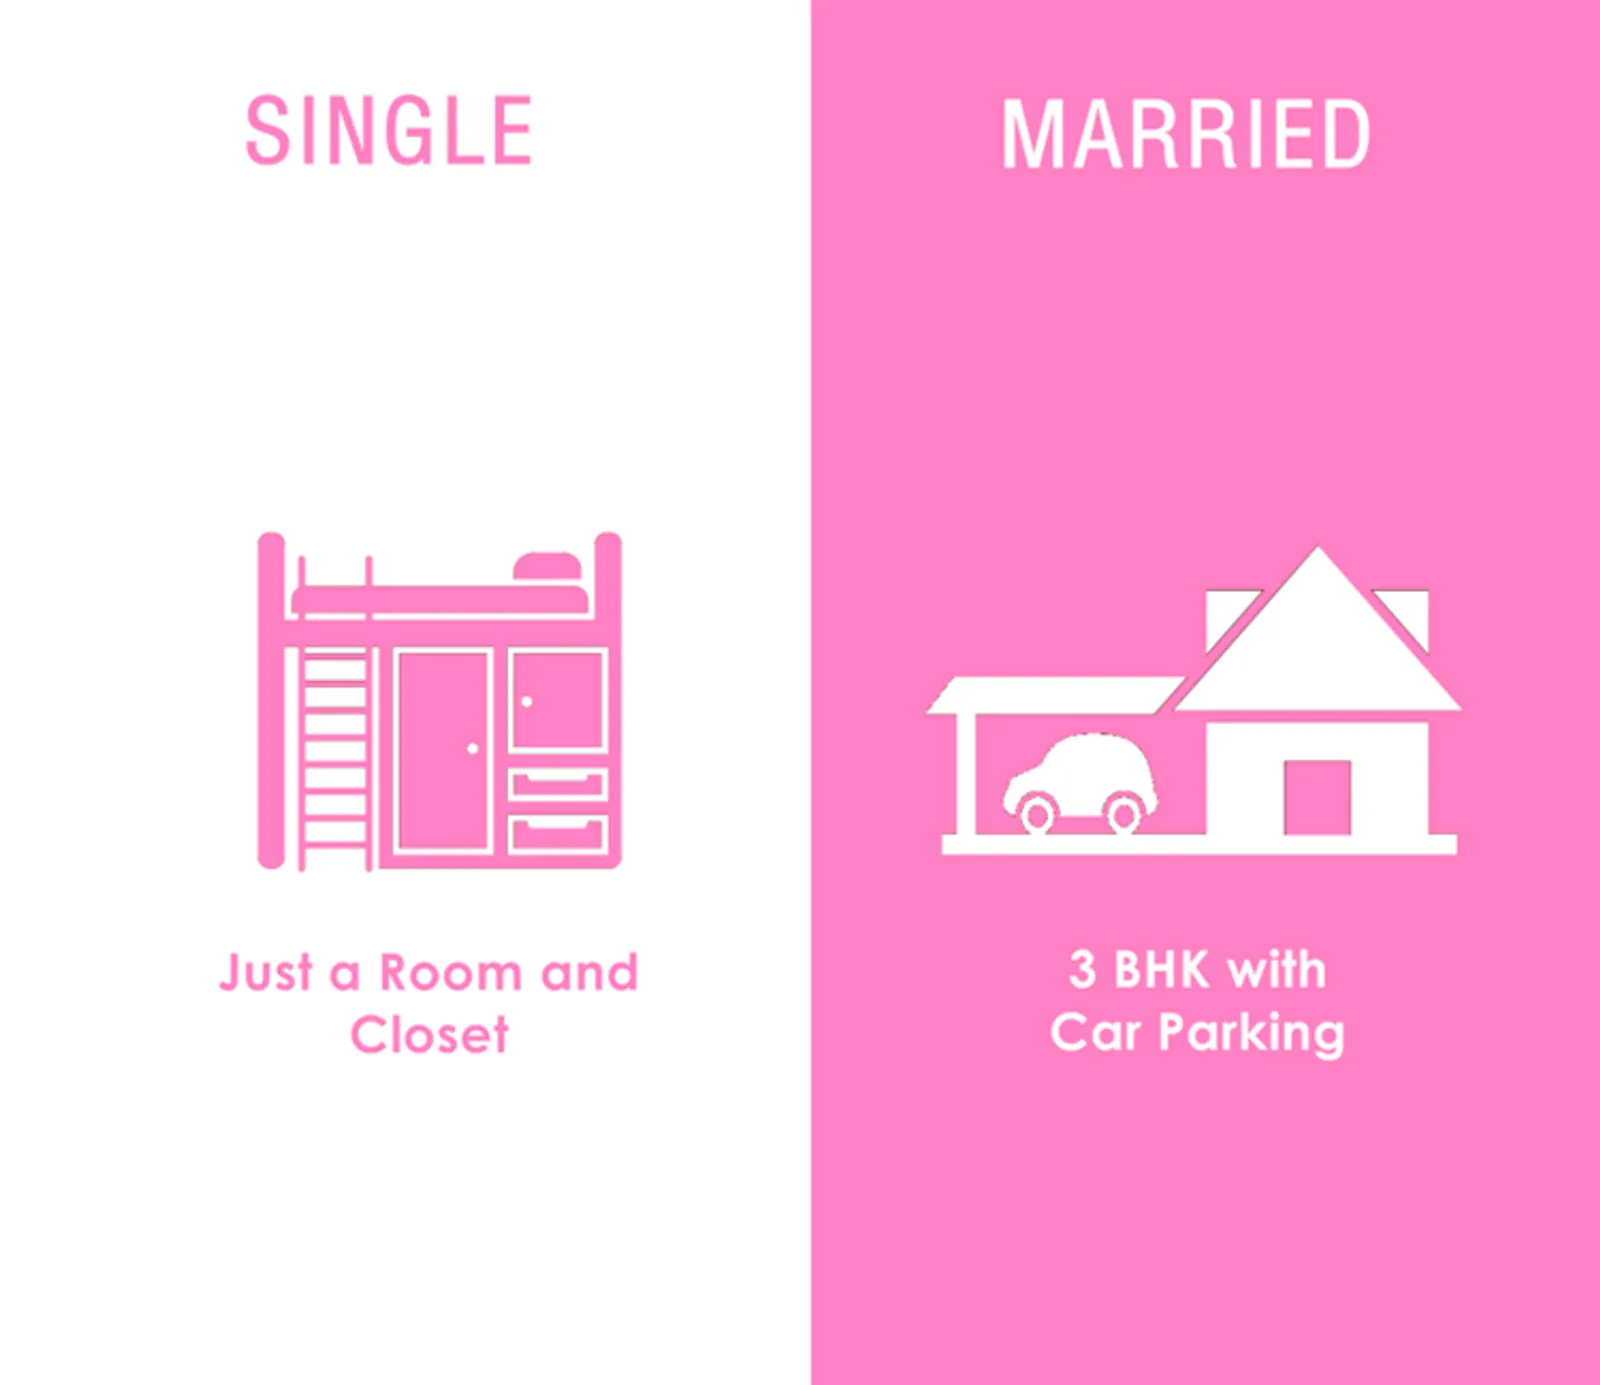 7 Ilustrasi Lucu Perbedaan Saat Masih Single dan Sudah Menikah